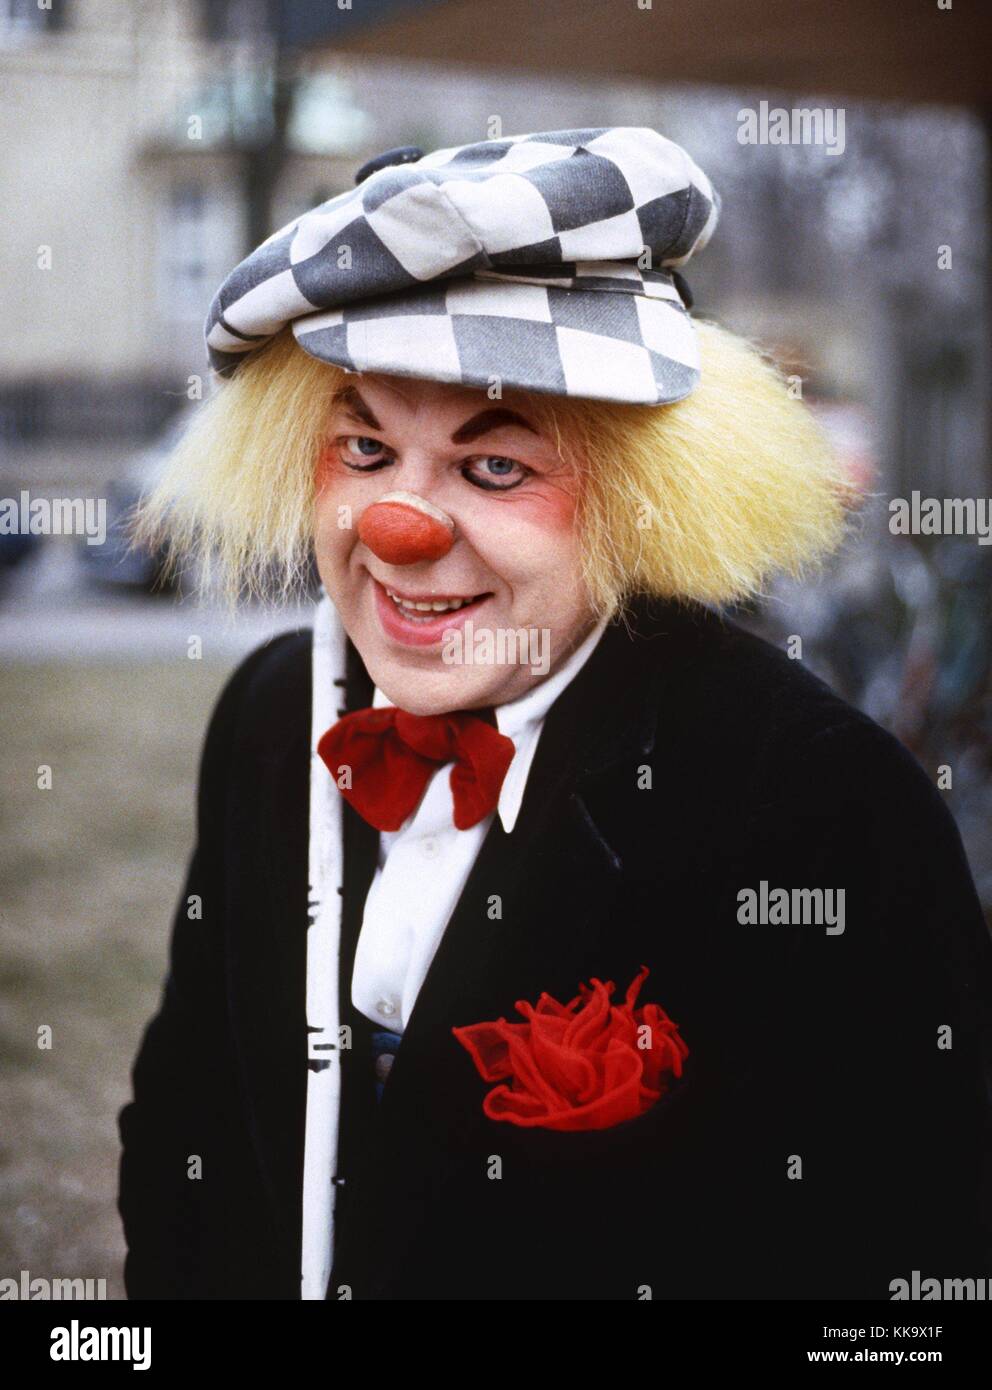 Le clown de cirque d'état de Moscou, Oleg popow, photographié en mars 1980,  Munich. Le cap d'un nœud Papillon rouge, qui sont les marques de son  caractère. Il est né le 31